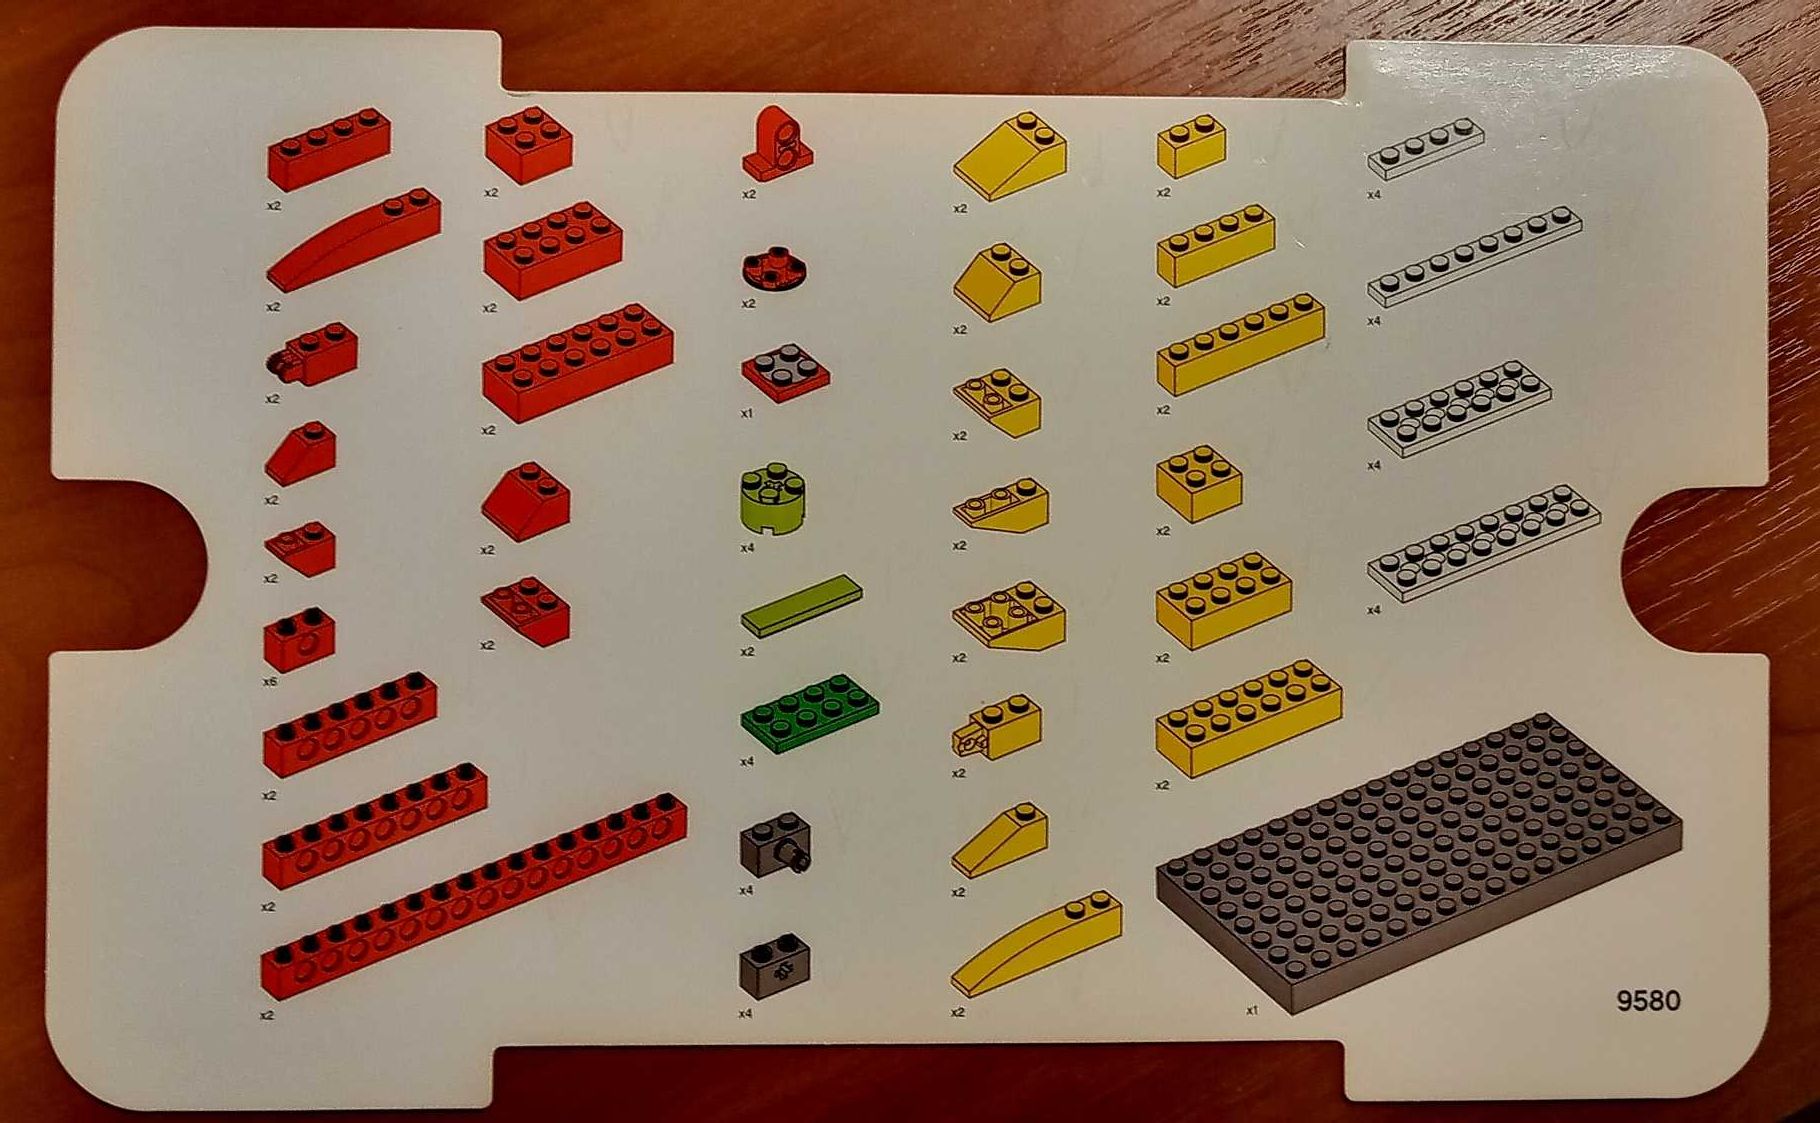 Продам: Конструктор LEGO Education WeDo Construction Set (9580) б/у